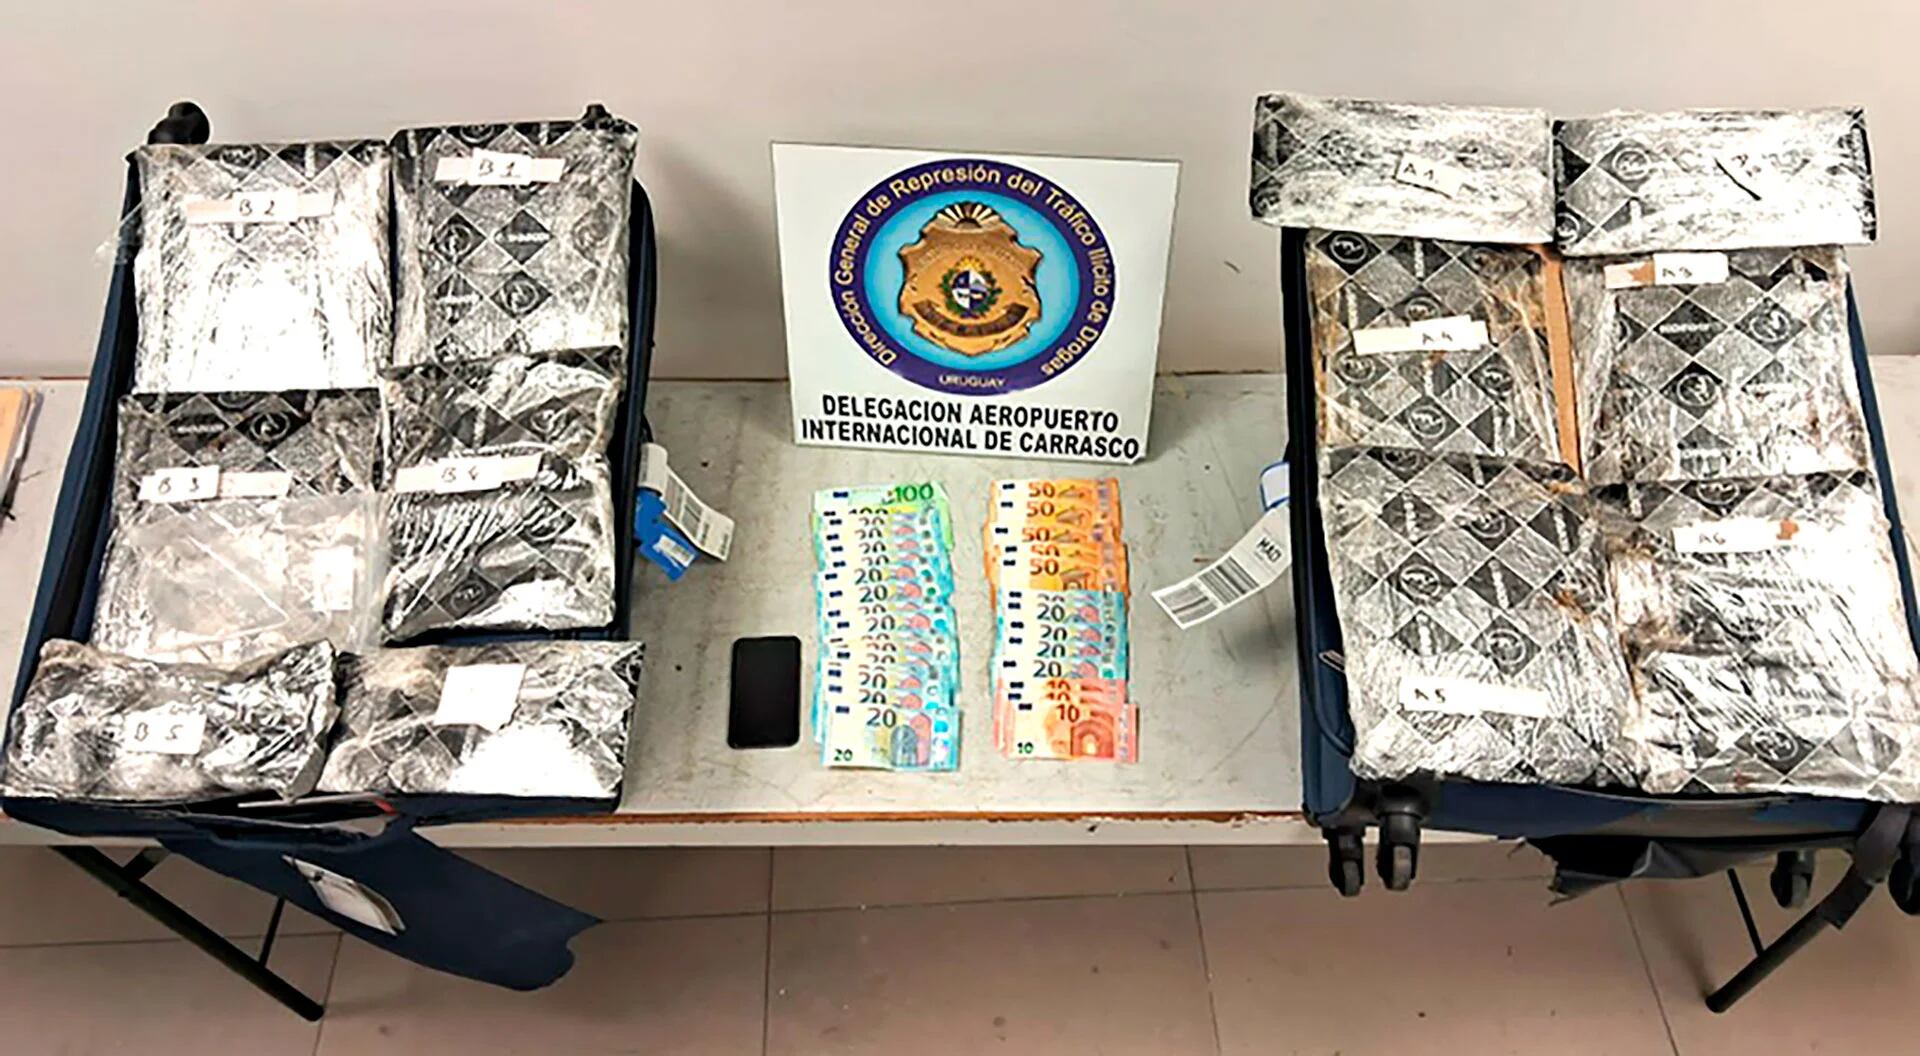 Las valijas tenían un doble fondo, que escondían 6,5 kilogramos de cocaína (Ministerio del Interior de Uruguay)